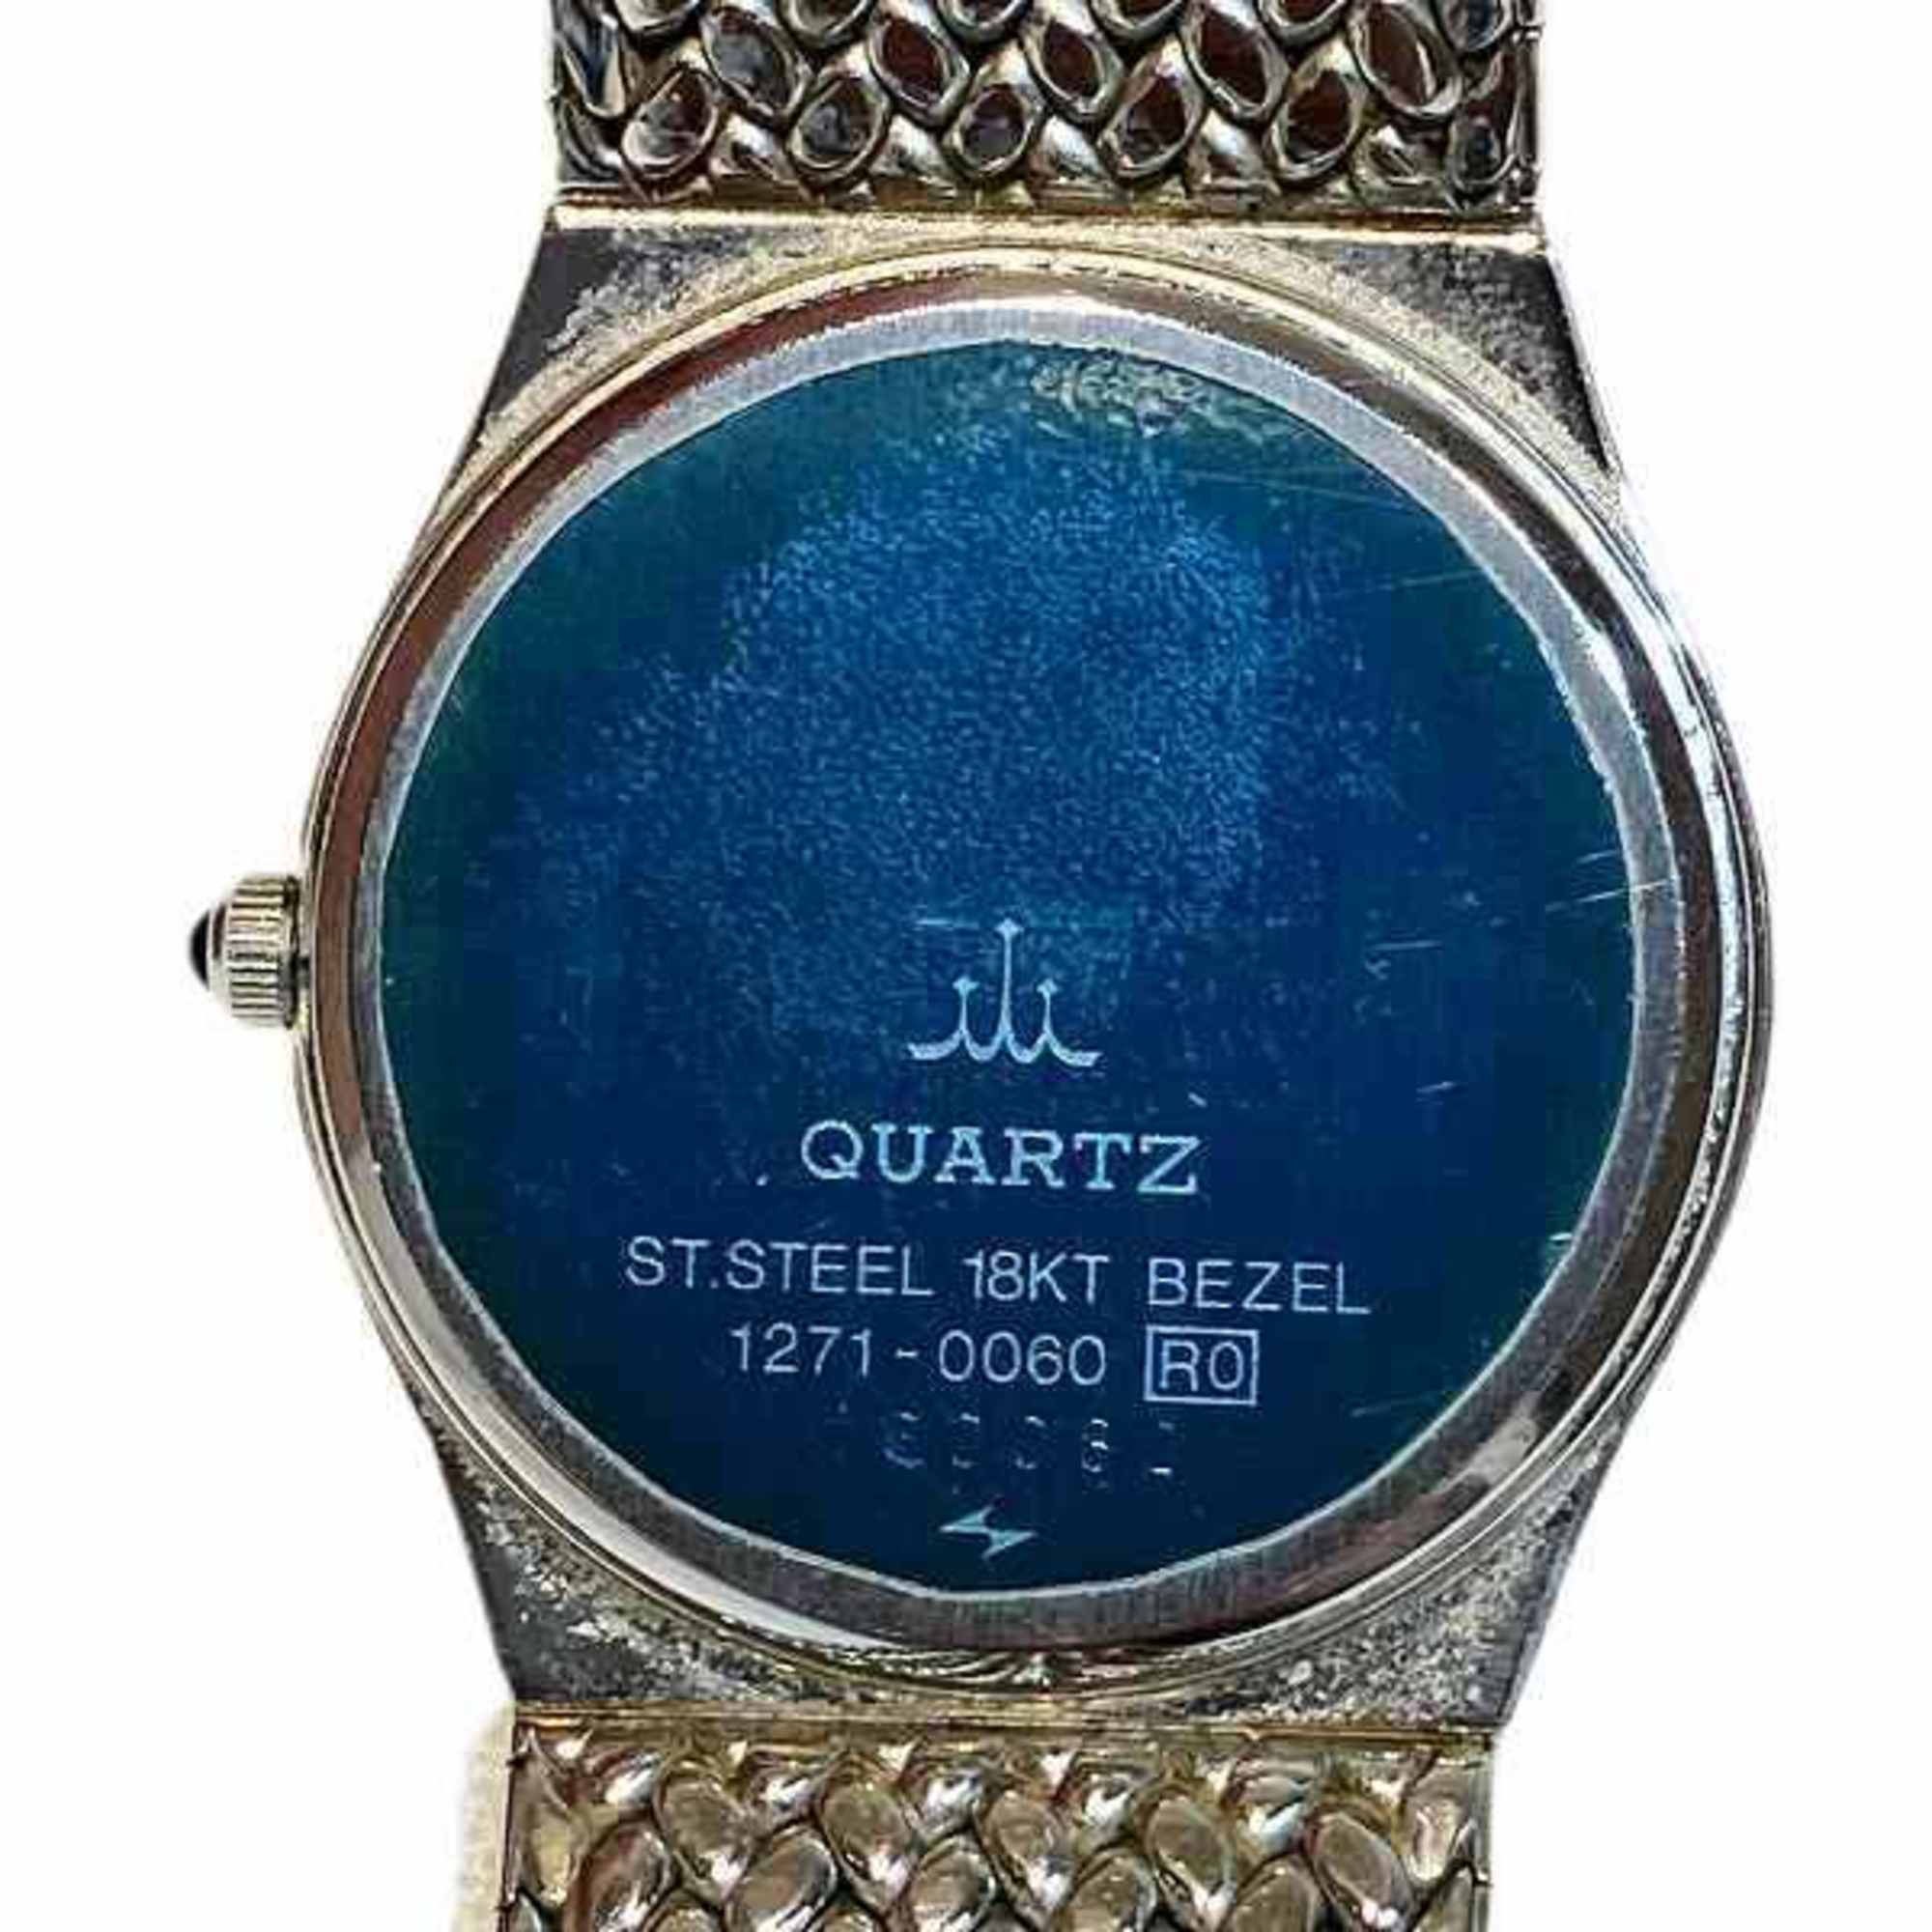 Seiko Credor 1271-0060 Quartz Watch Women's